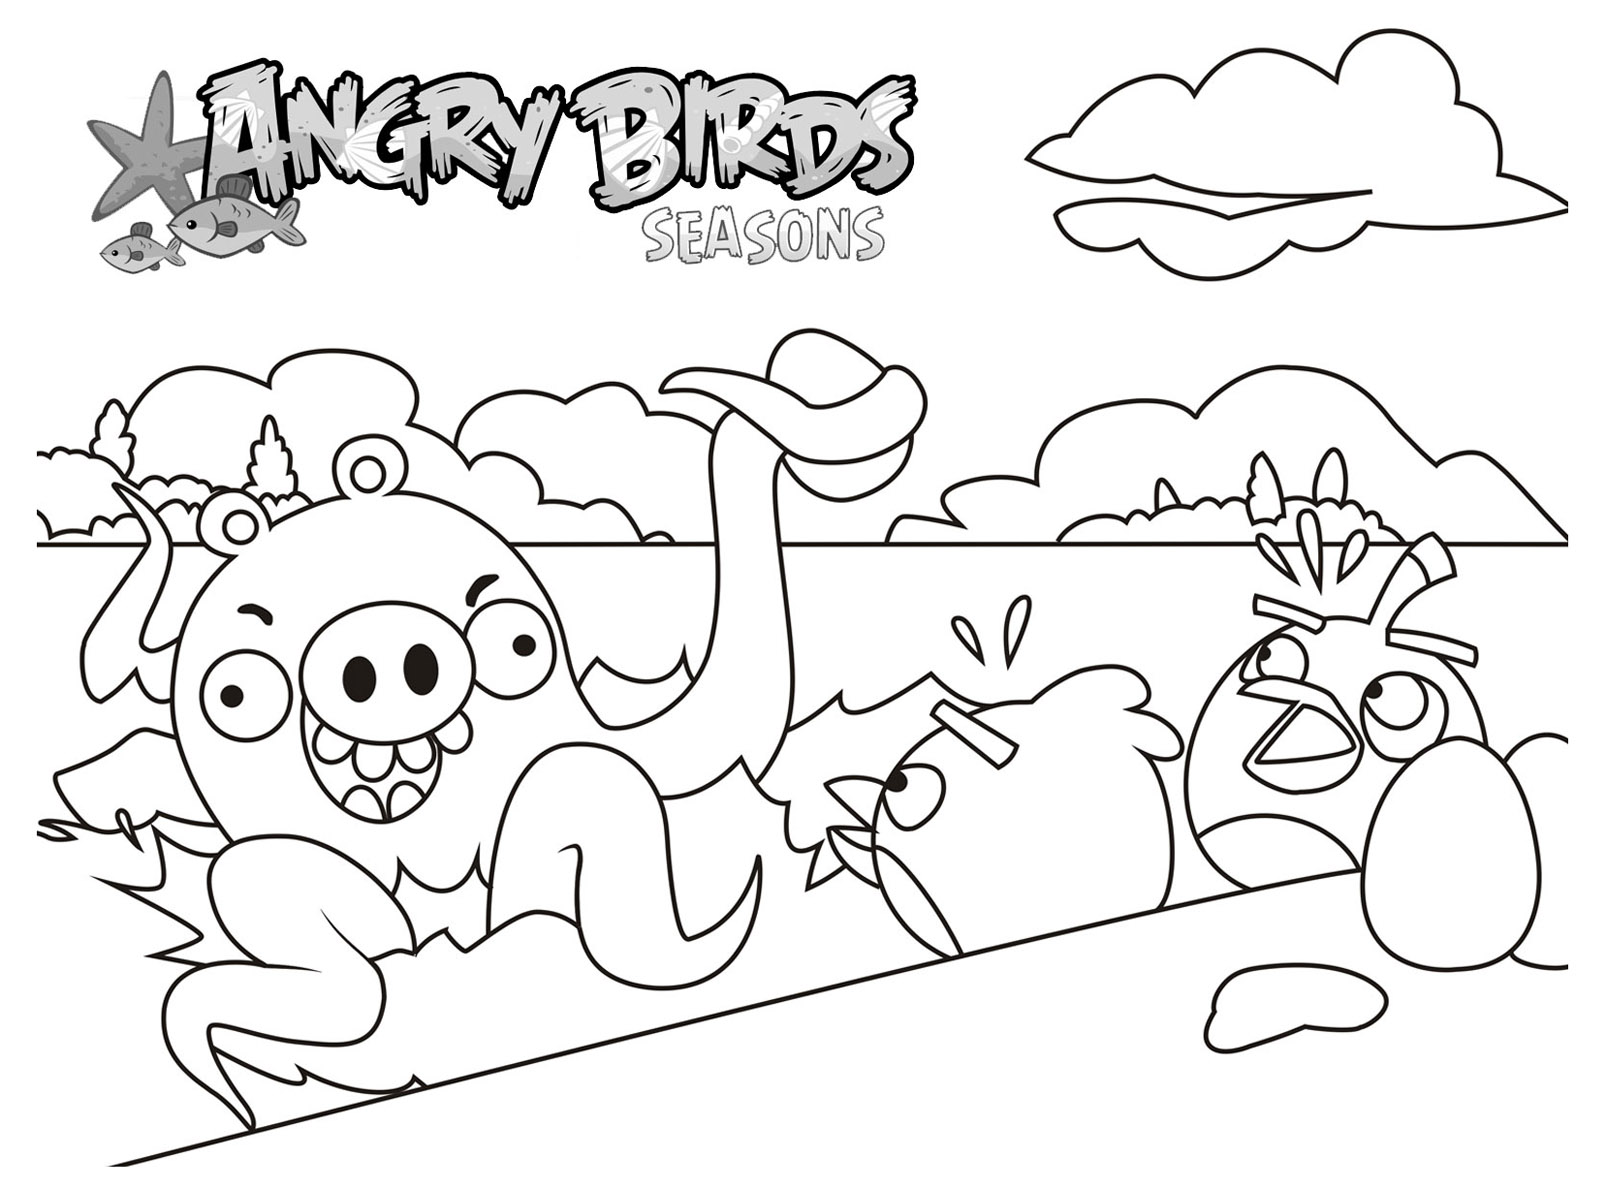 Super coloriage de Angry Birds assez simples